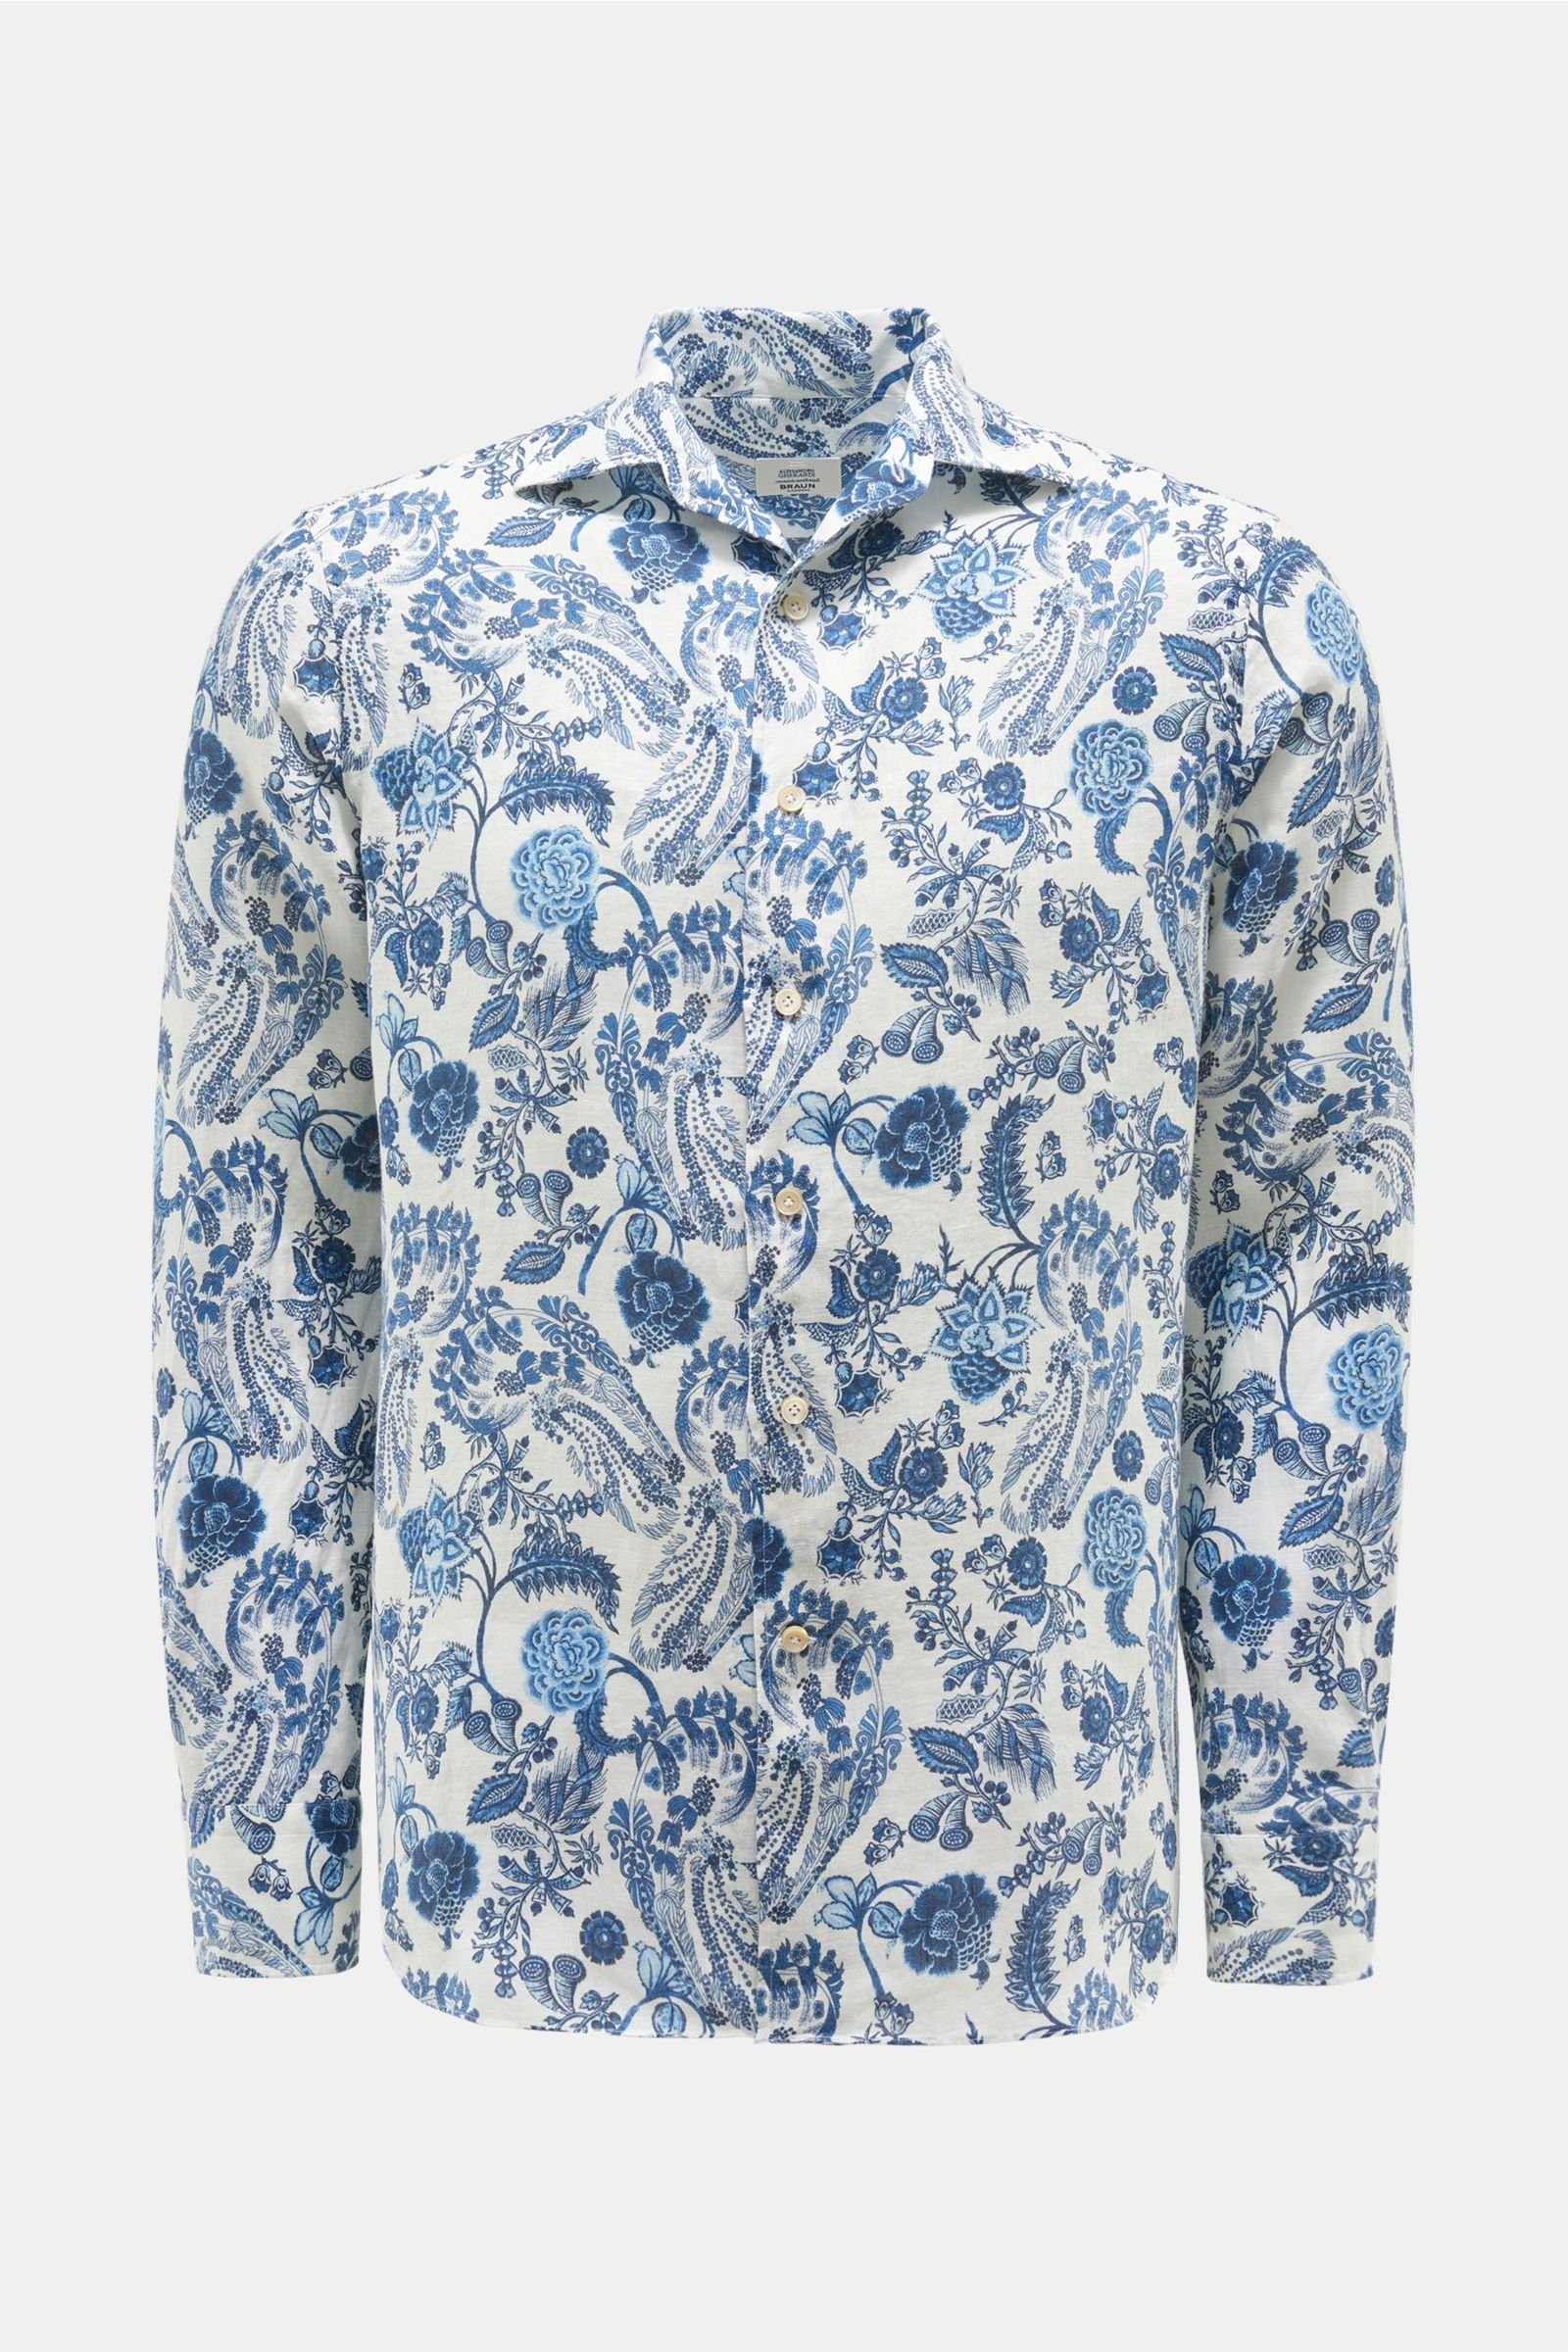 Linen shirt shark collar white/navy patterned